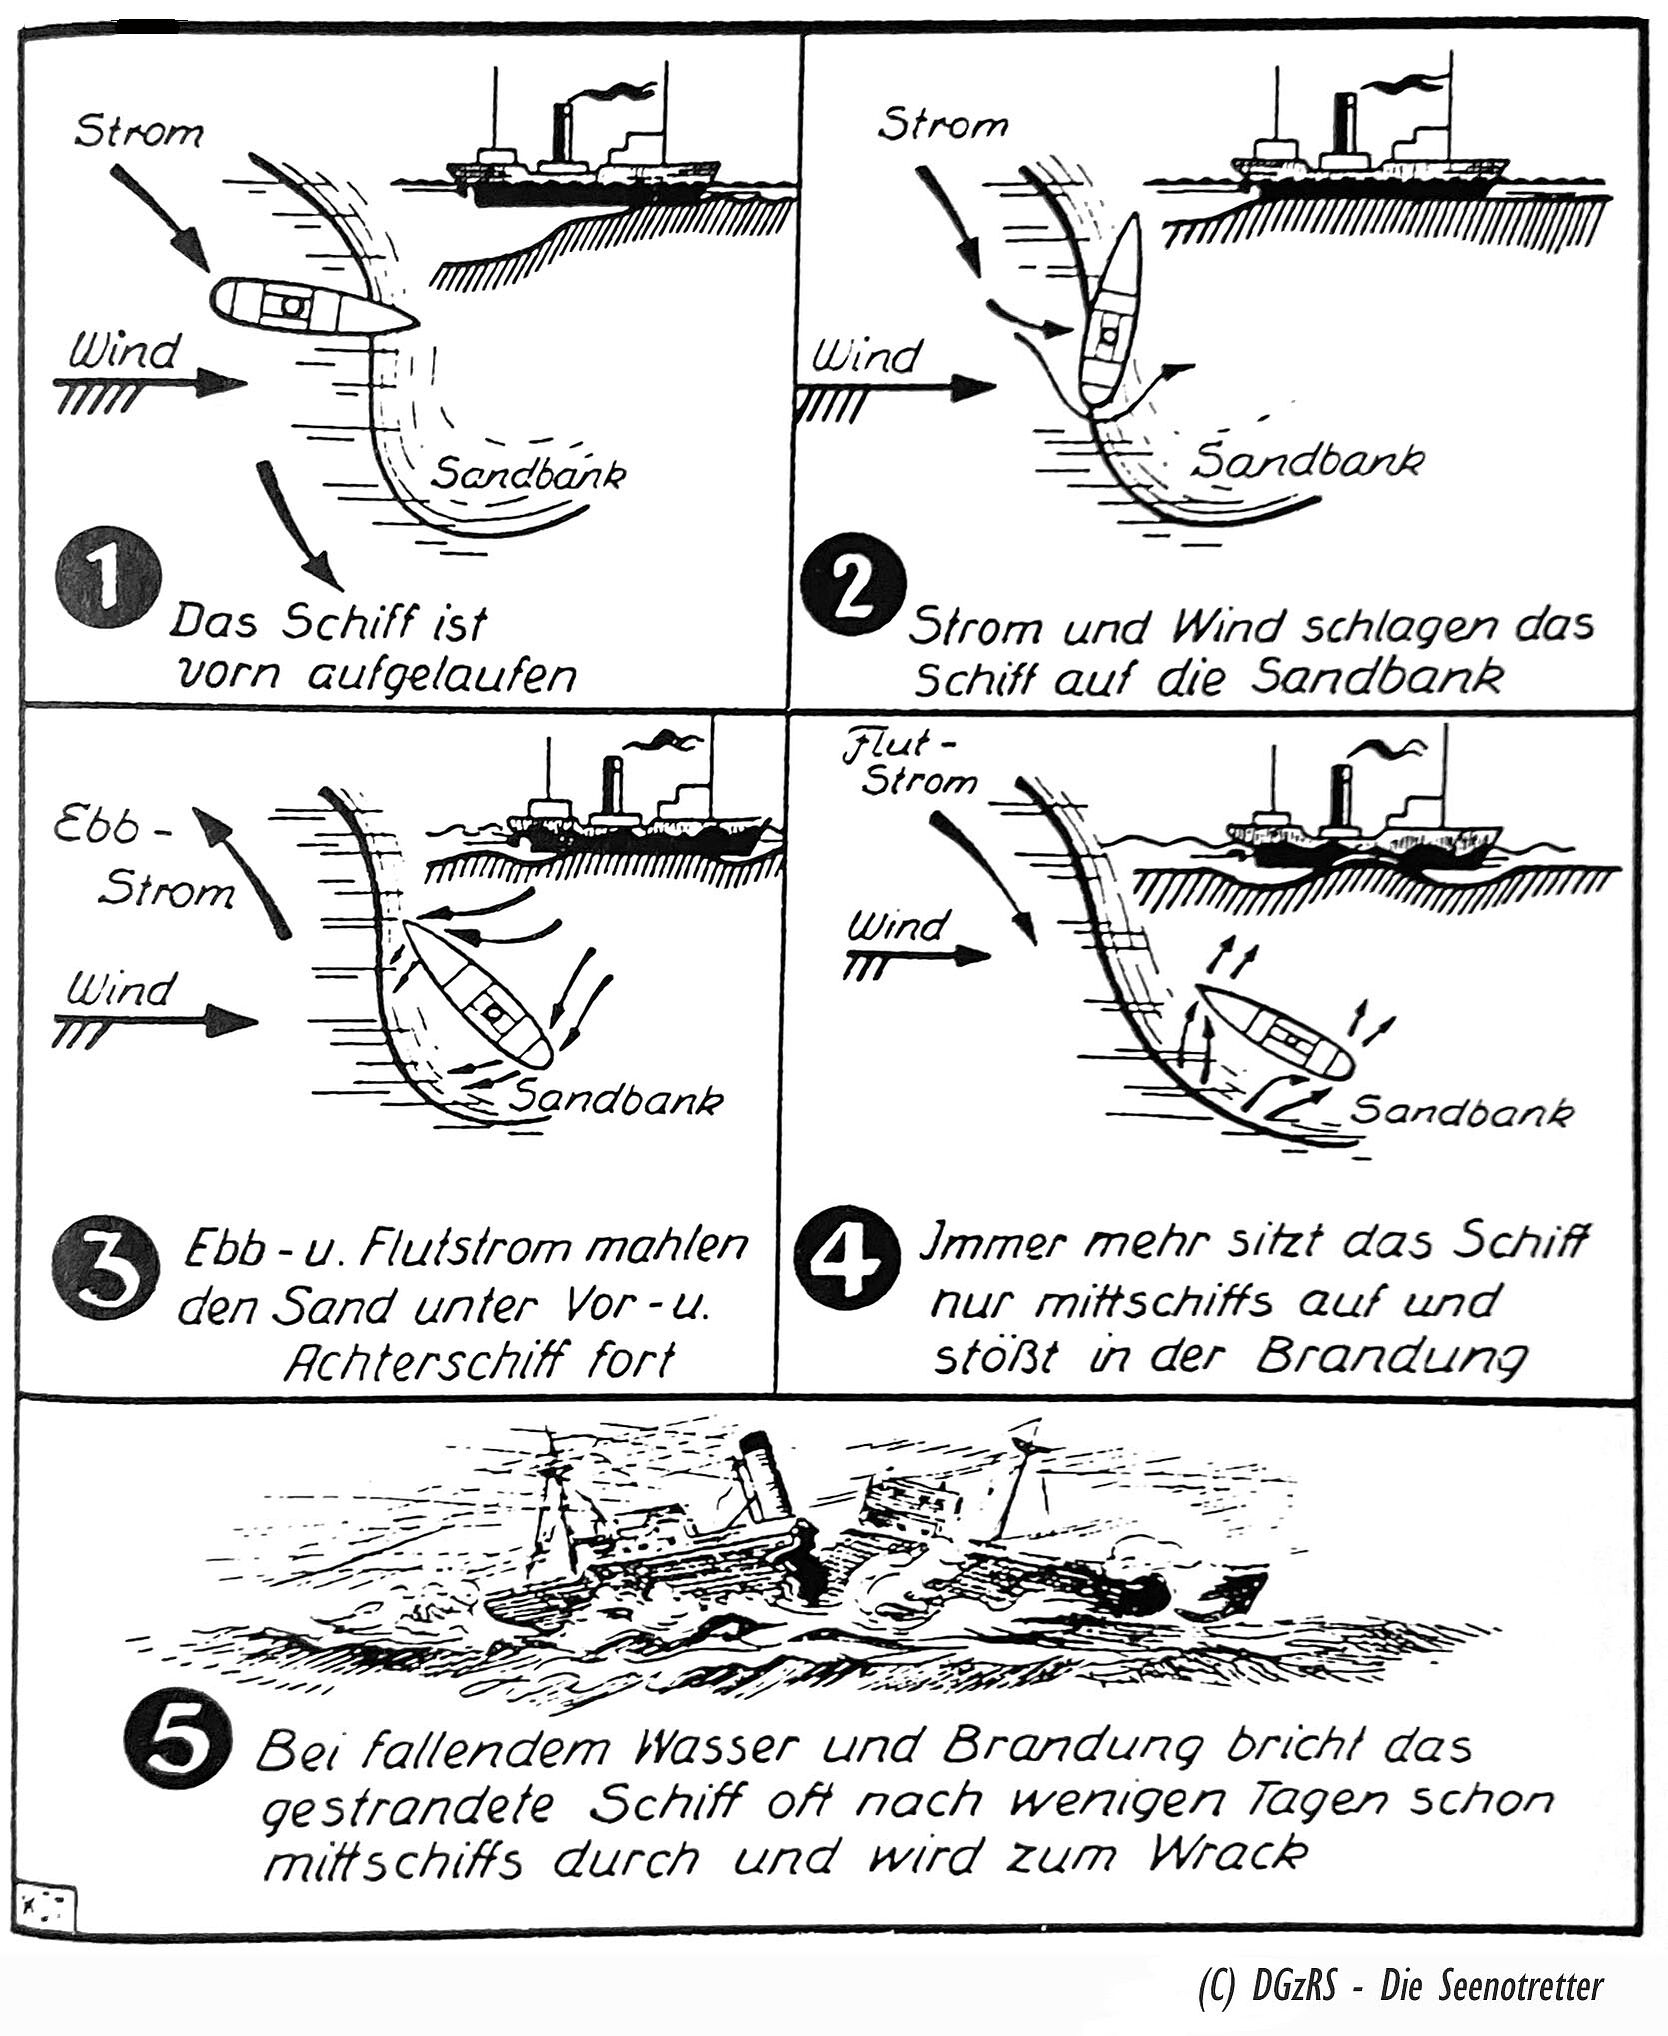 Zeichnung von der Zerstörung eines gestrandeten Schiffes durch Treibsand